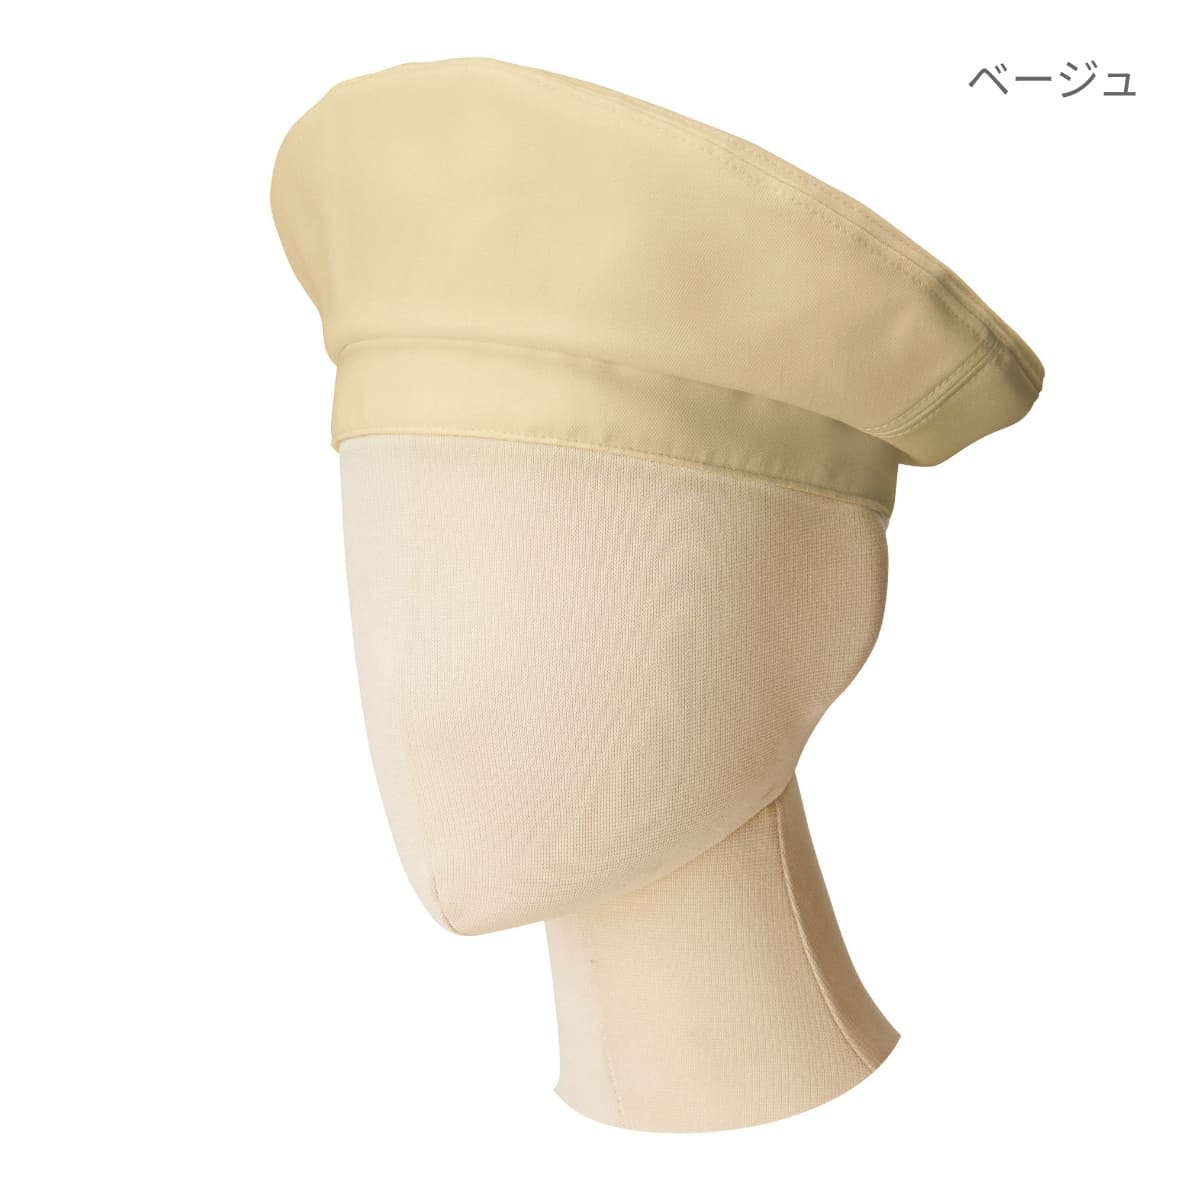 ベレー帽 | カフェ・飲食店制服 | 1枚 | FA9673 | ブルー